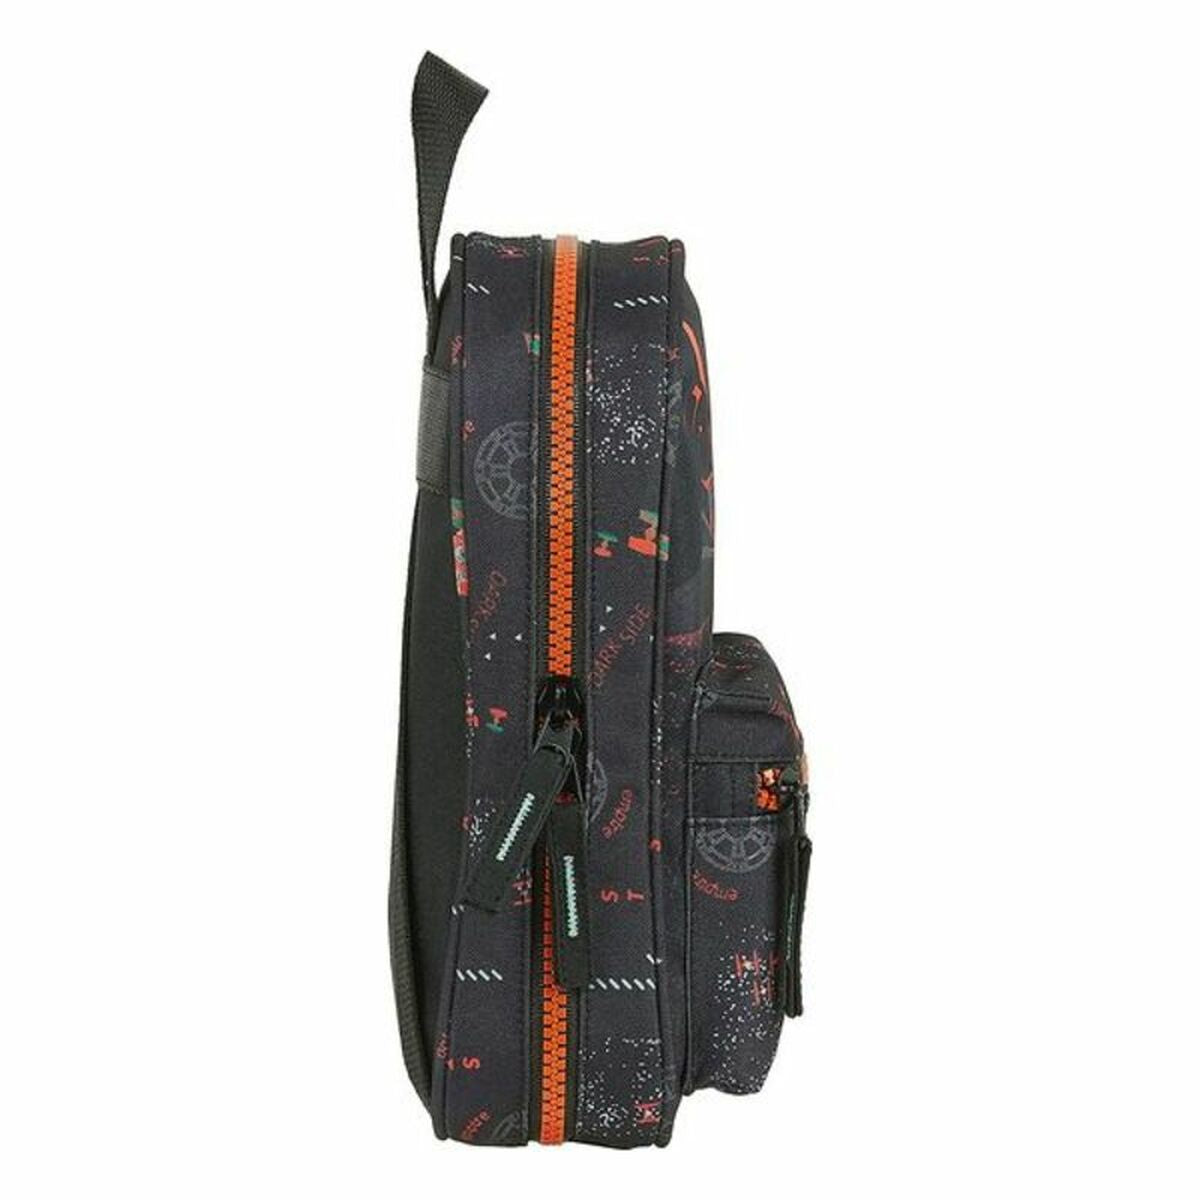 Backpack Pencil Case Star Wars The Dark Side Black Orange